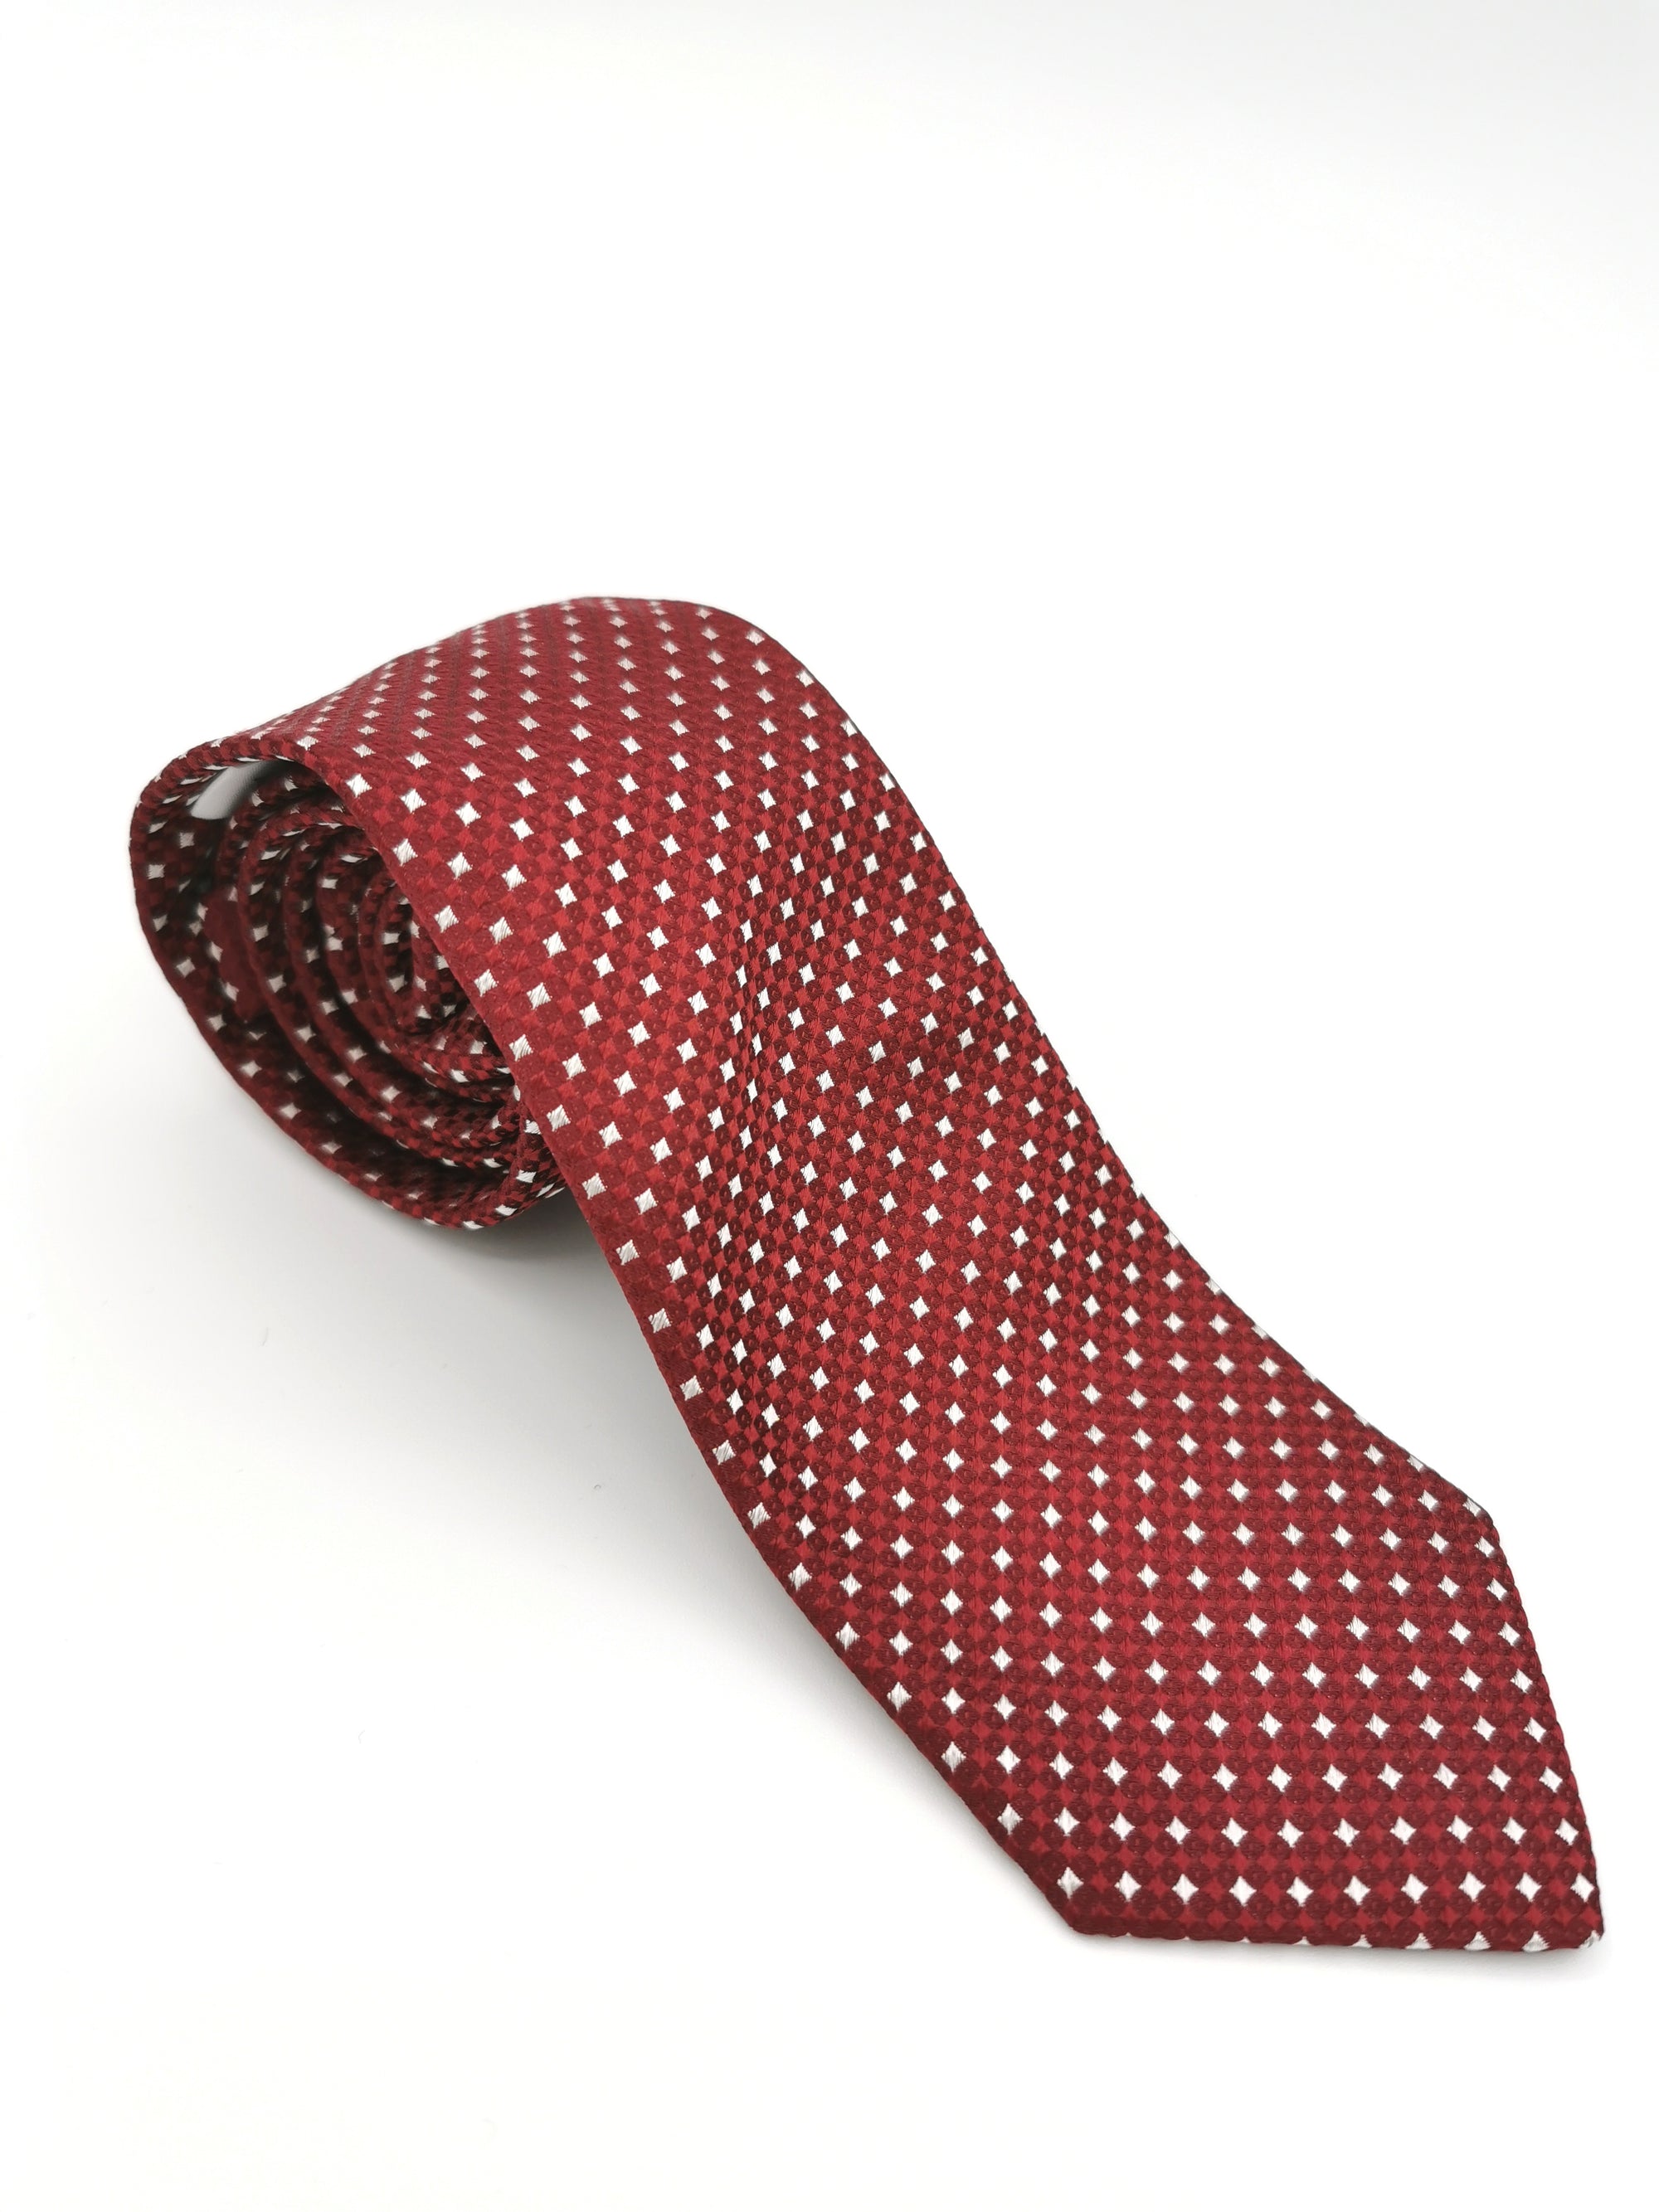 Cravate Ferala à motif damier rouge et blanc